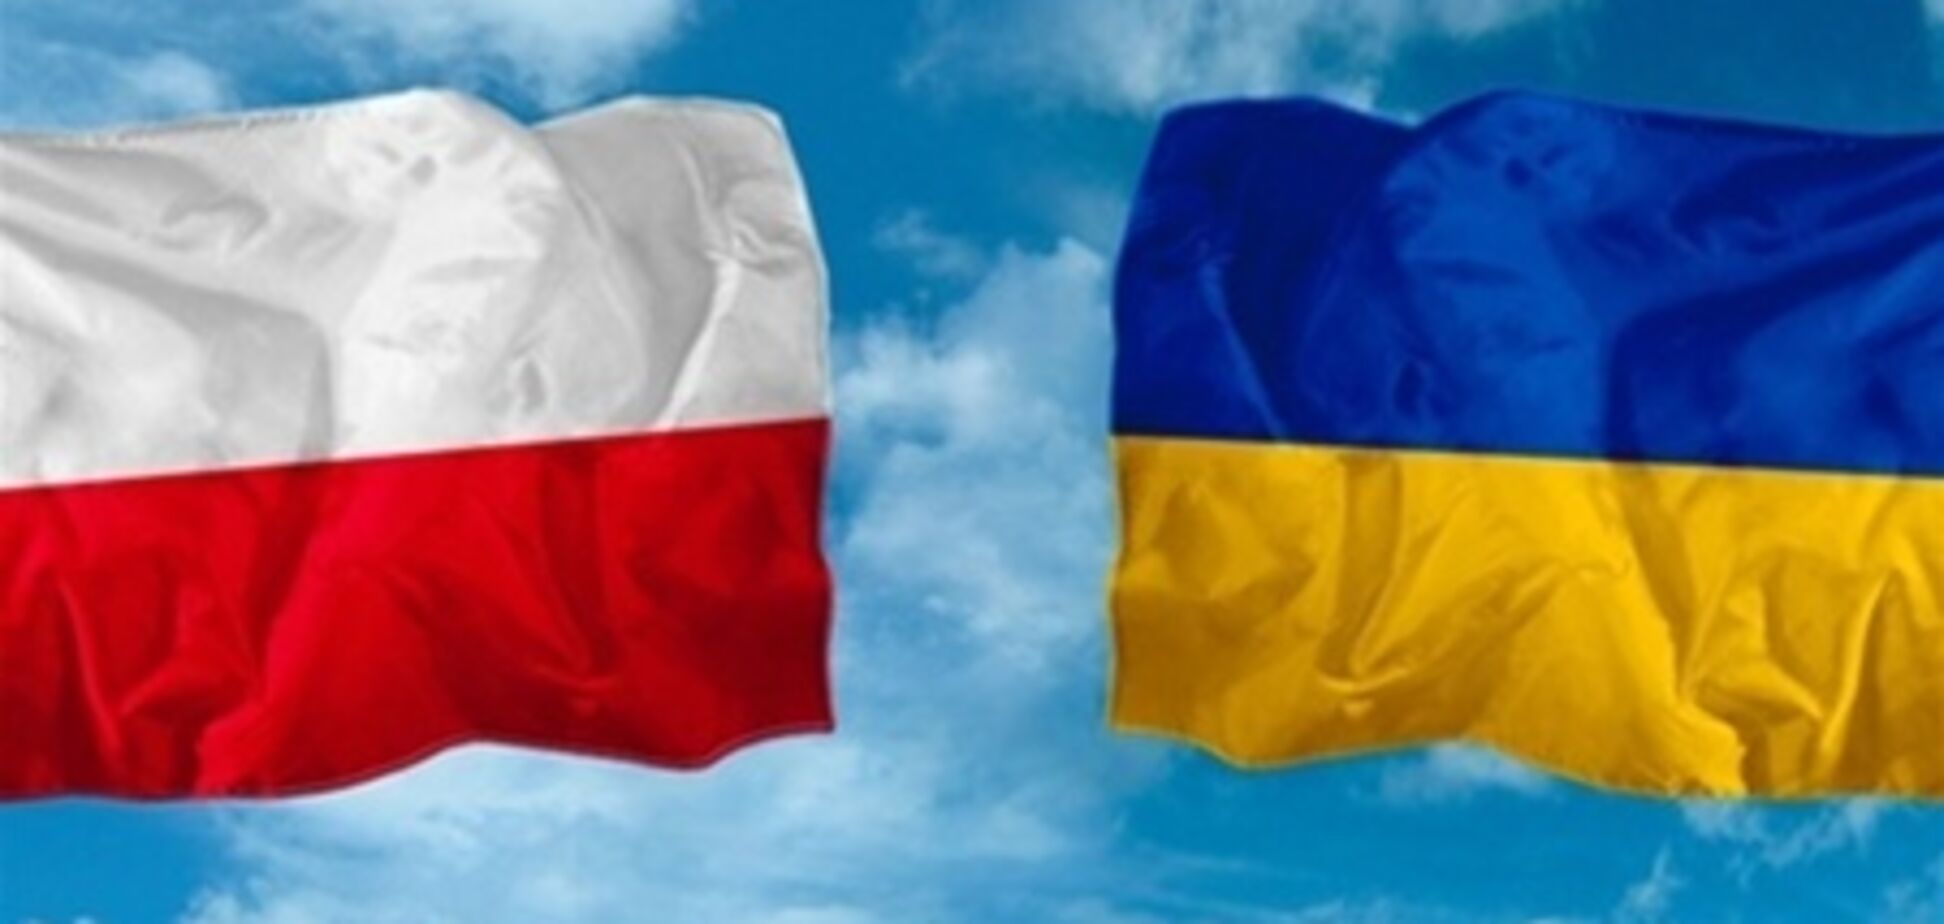 Рішення Сейму з Волинської трагедії загрожує відносинам з Україною - Кравчук